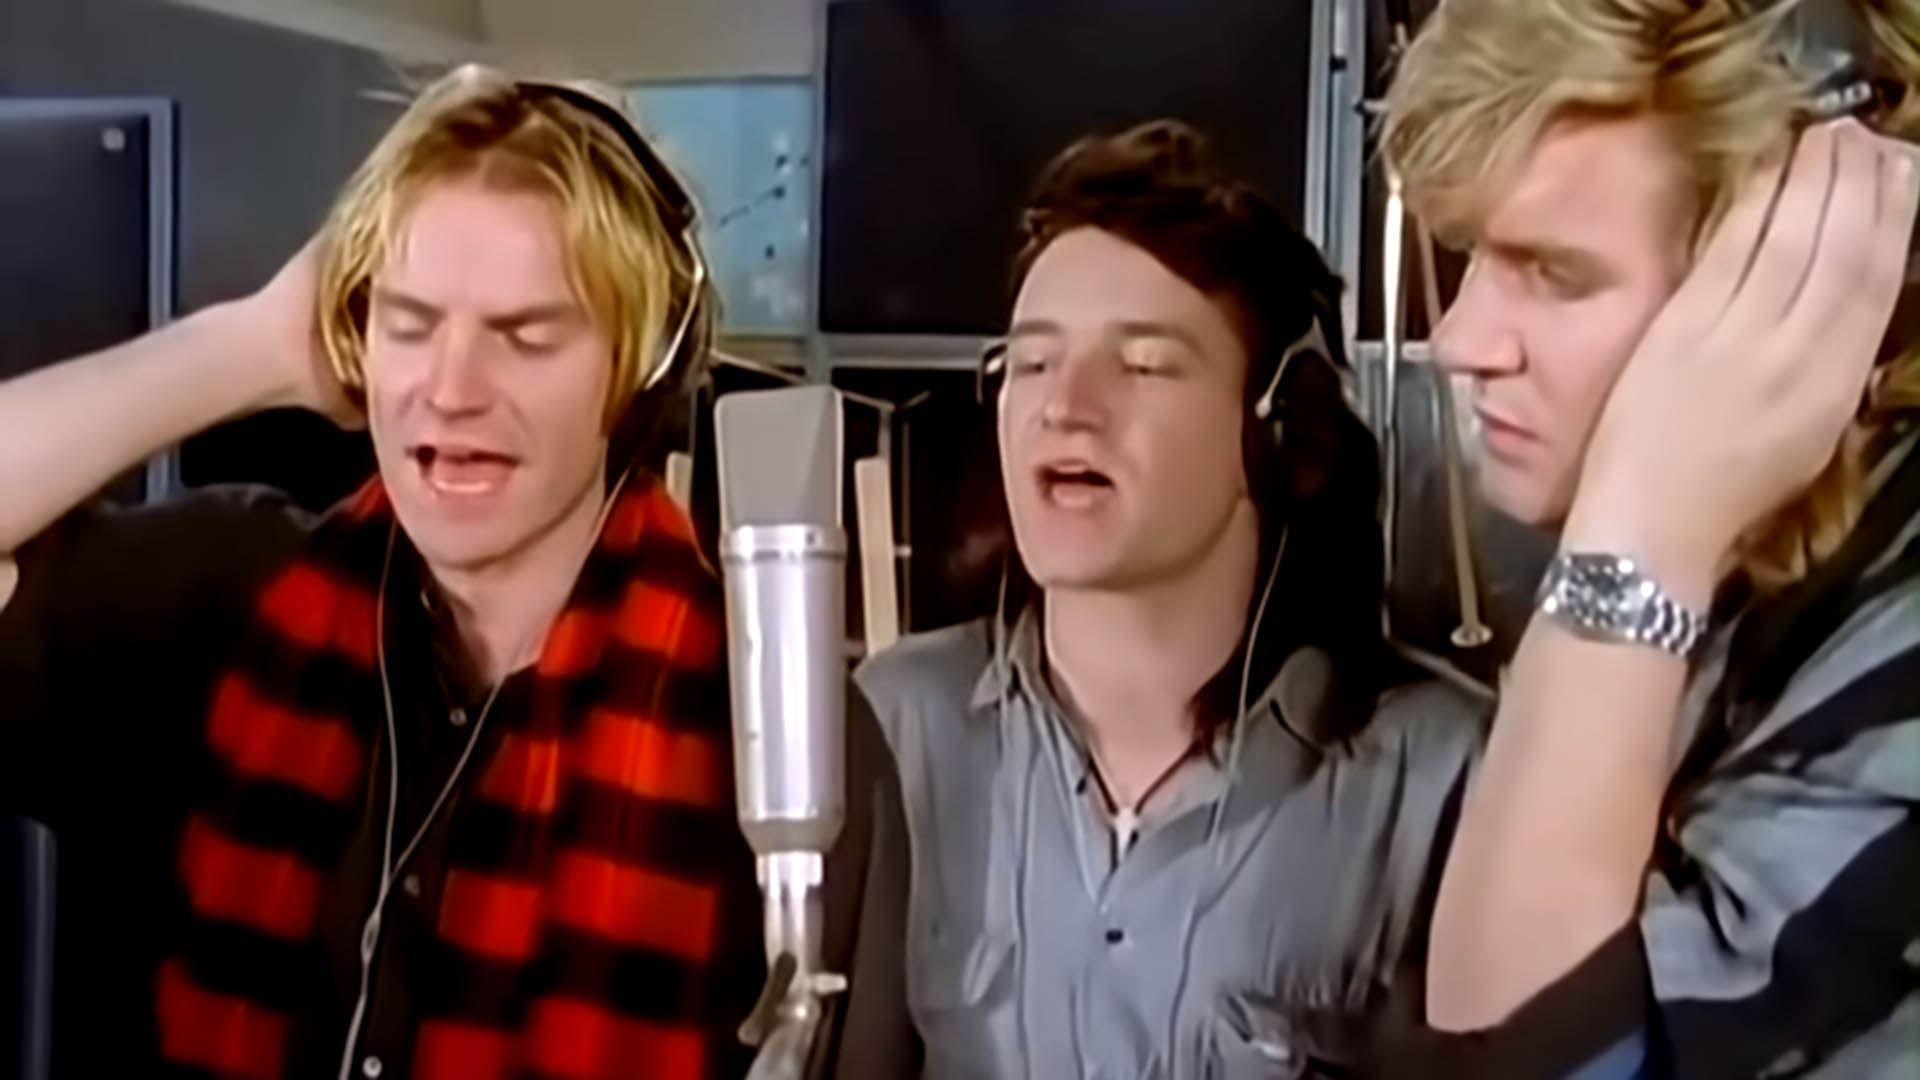 Una fermo immagine del videoclip della canzone originale del 1984 che raffigura Sting, Bono e Simone Le Bon, tre icone musicali emergenti dell'epoca.